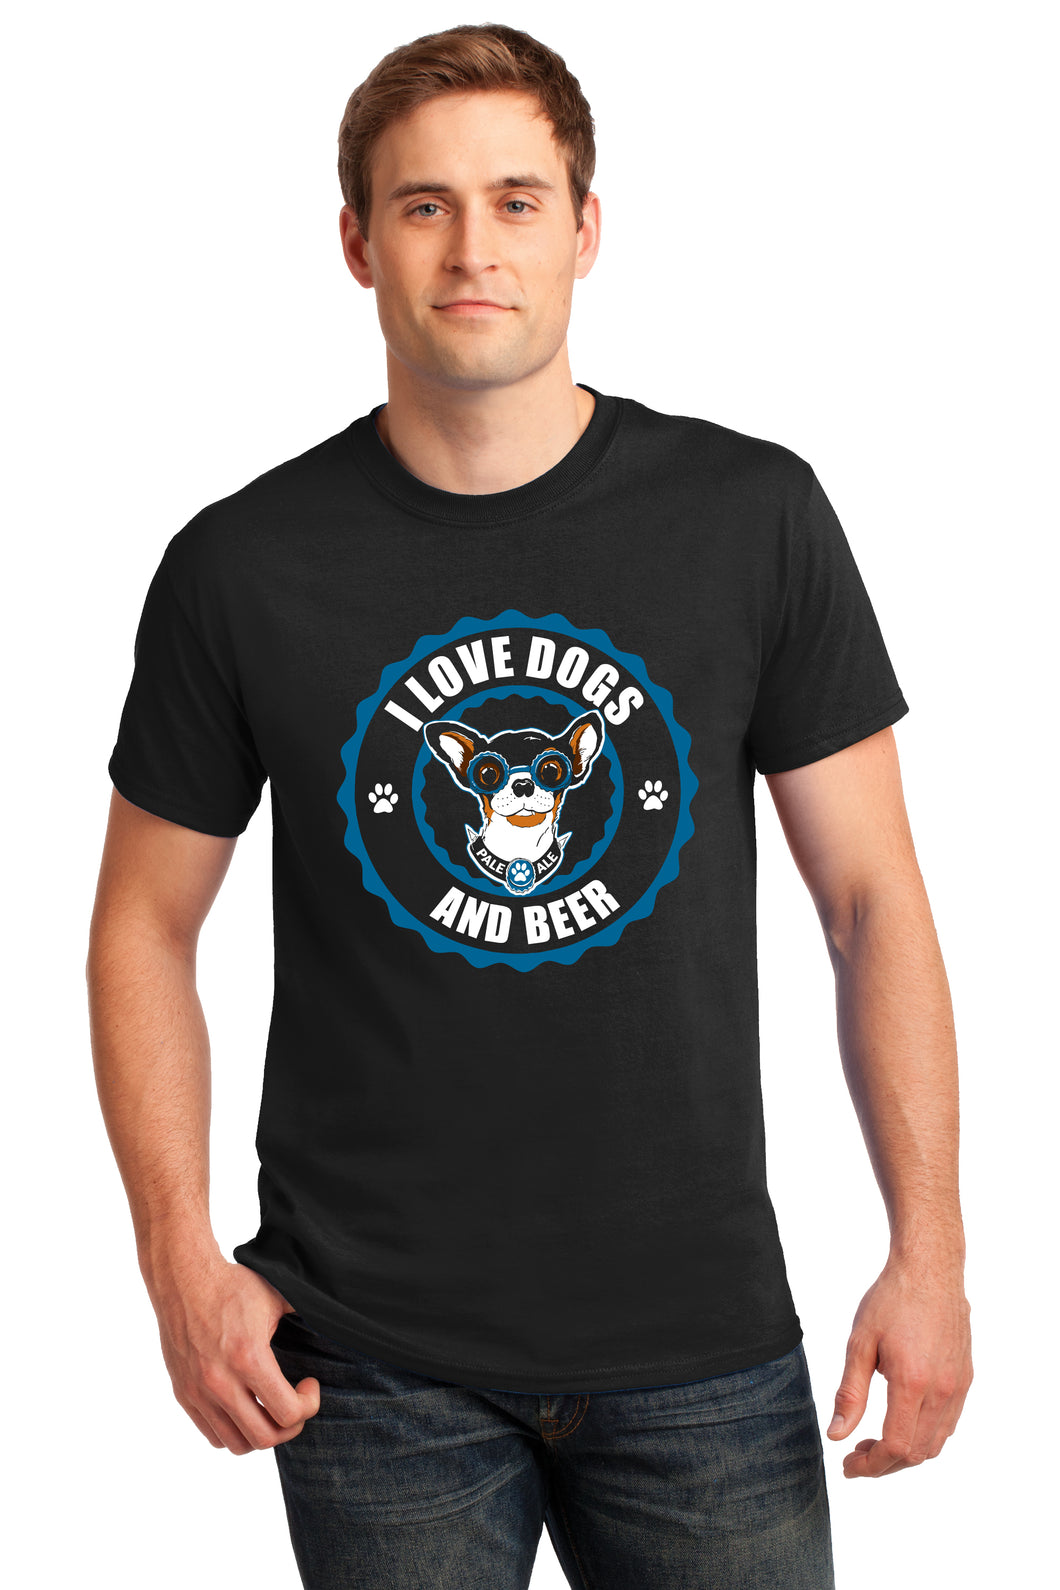 I Love Dogs & Beer Men's/Unisex or Women's T-shirt